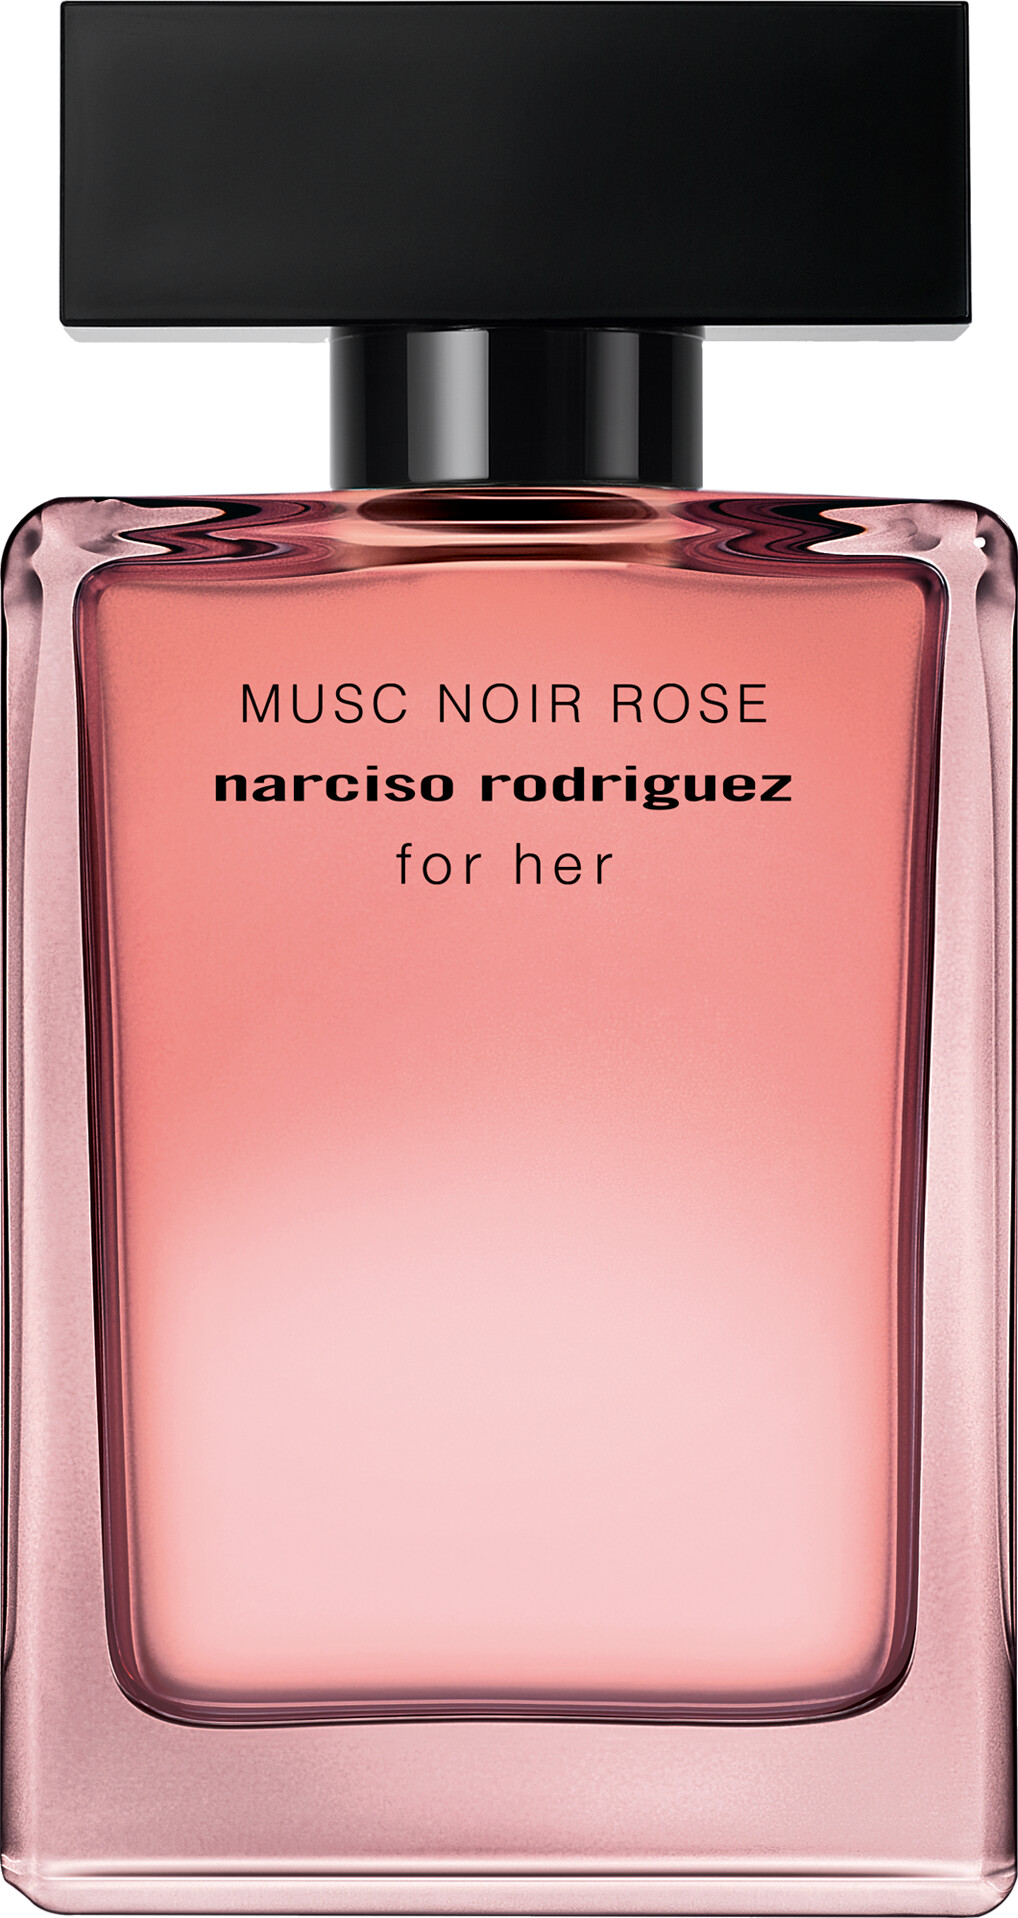 Narciso Rodriguez For Her Musc Noir Rose Eau de Parfum Spray 50ml